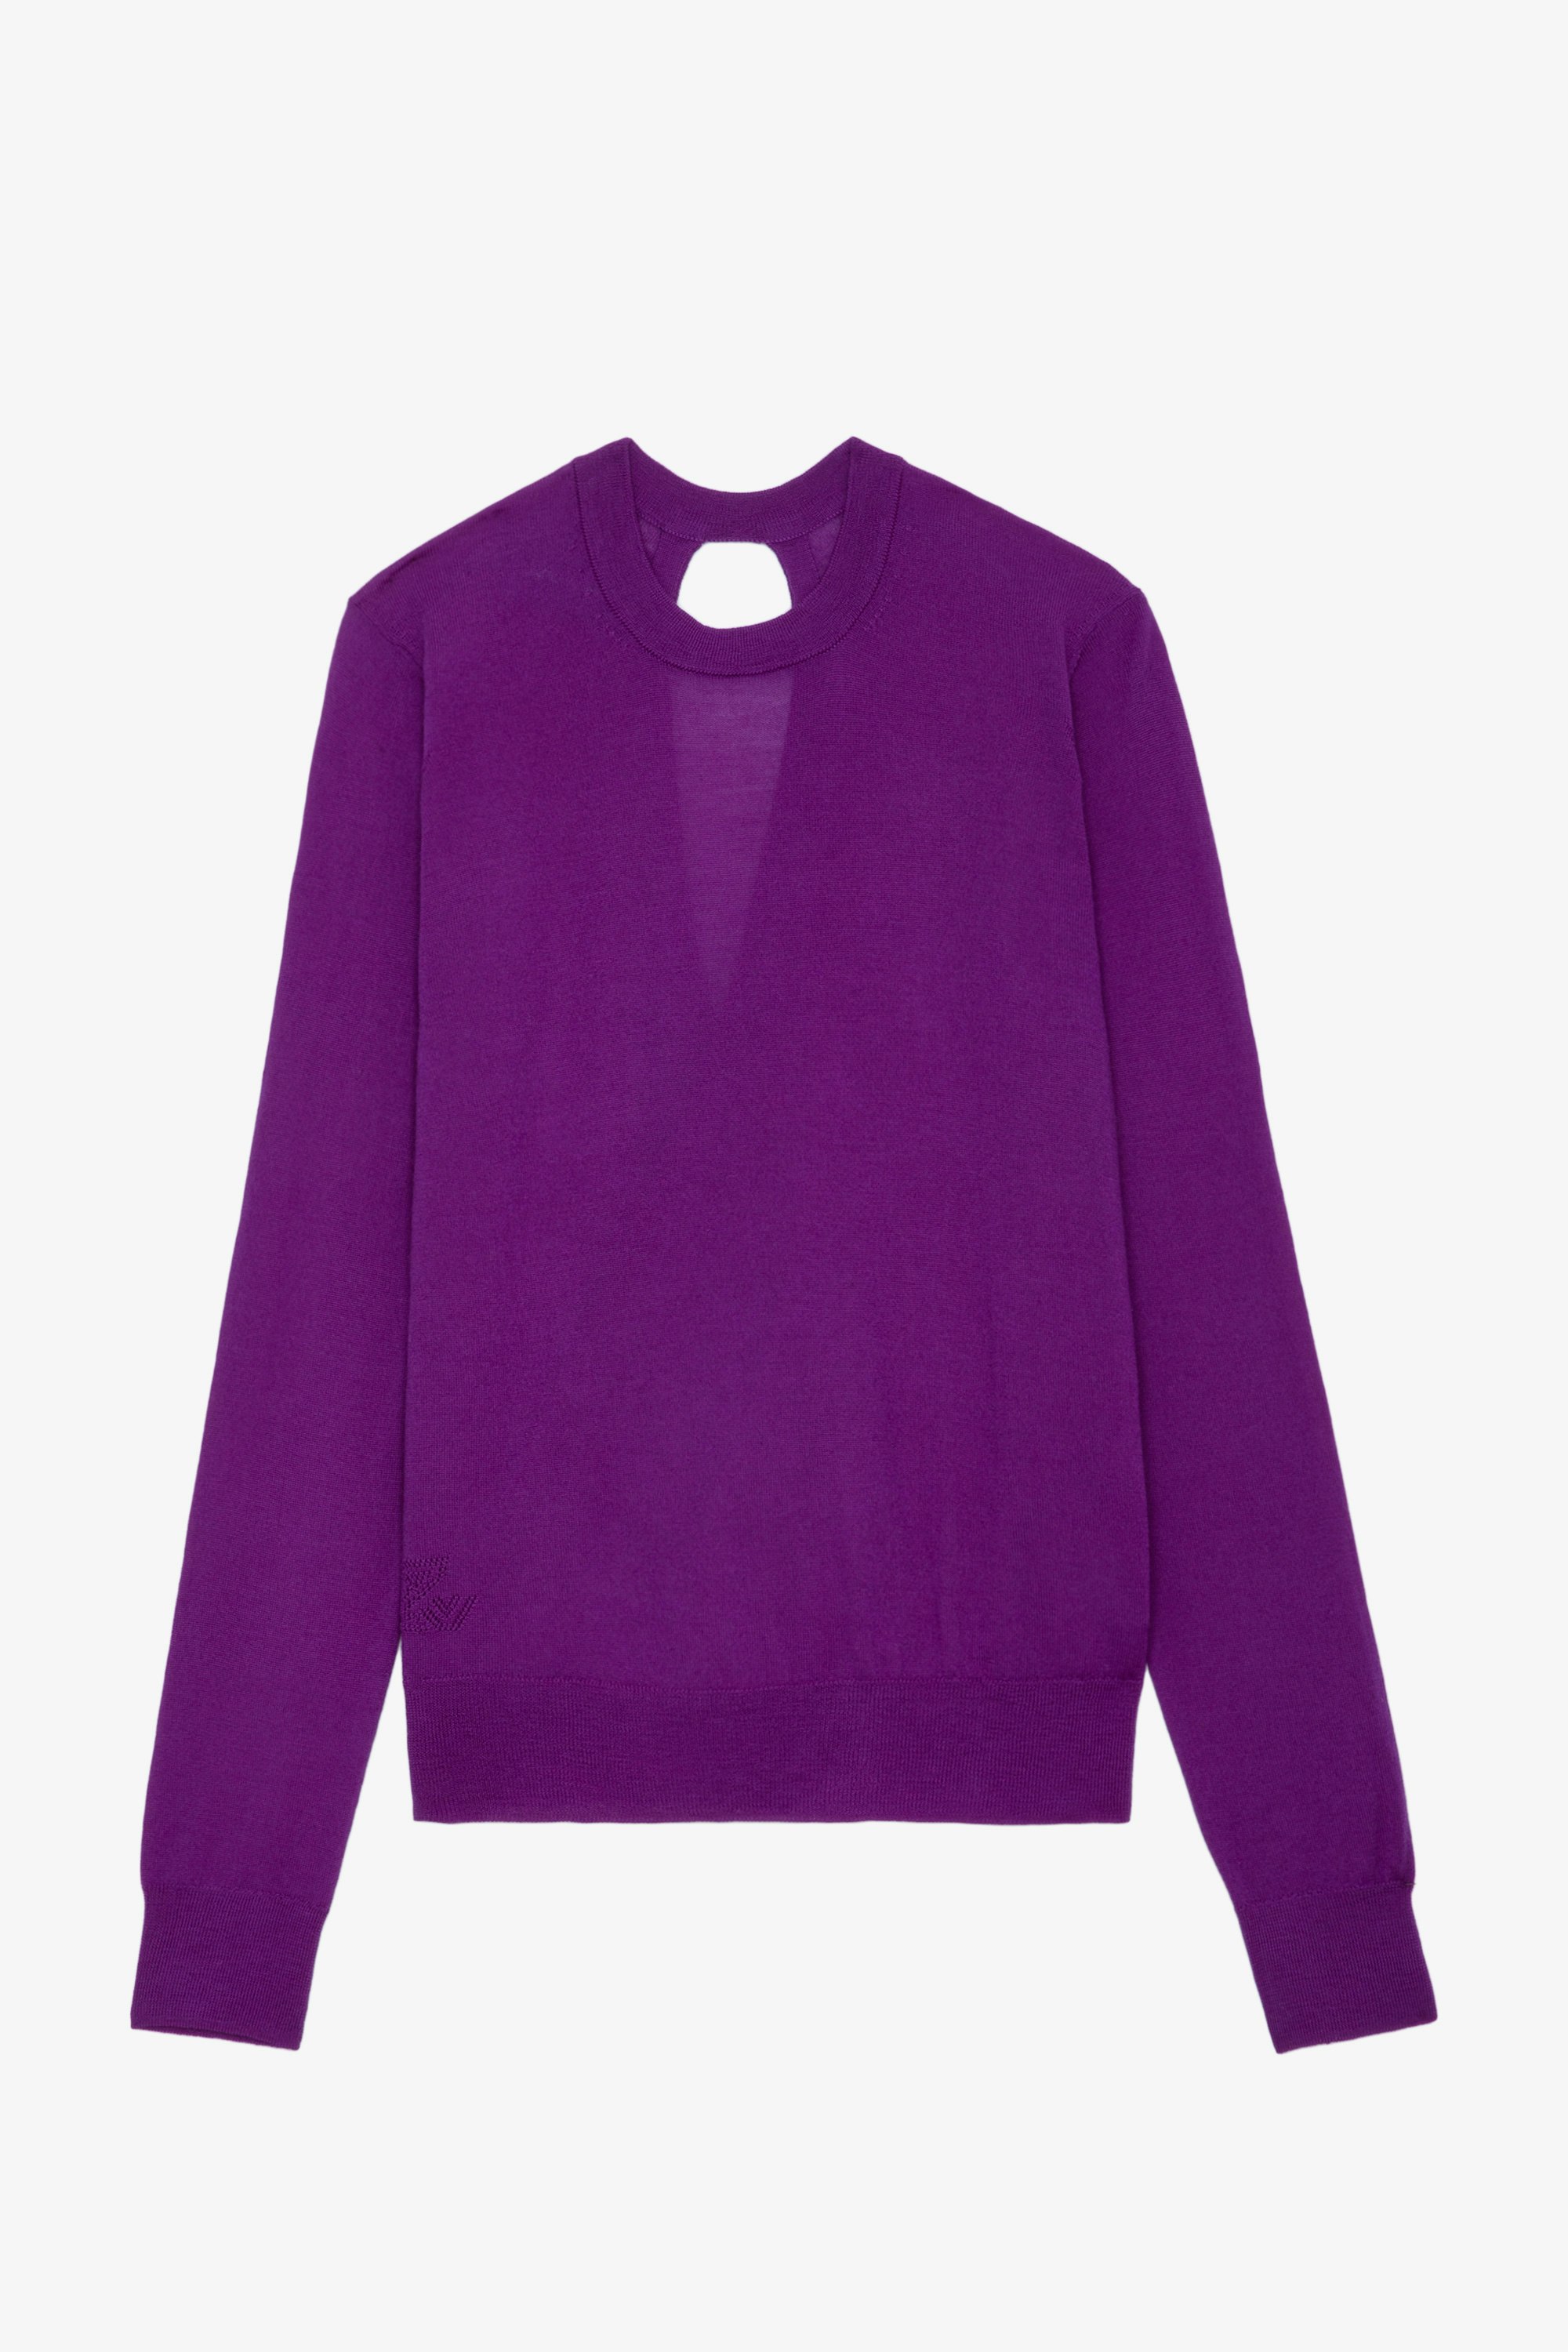 Pull Emma - Pull en laine mérinos violette à col rond, manches longues et dos croisé et ouvert.